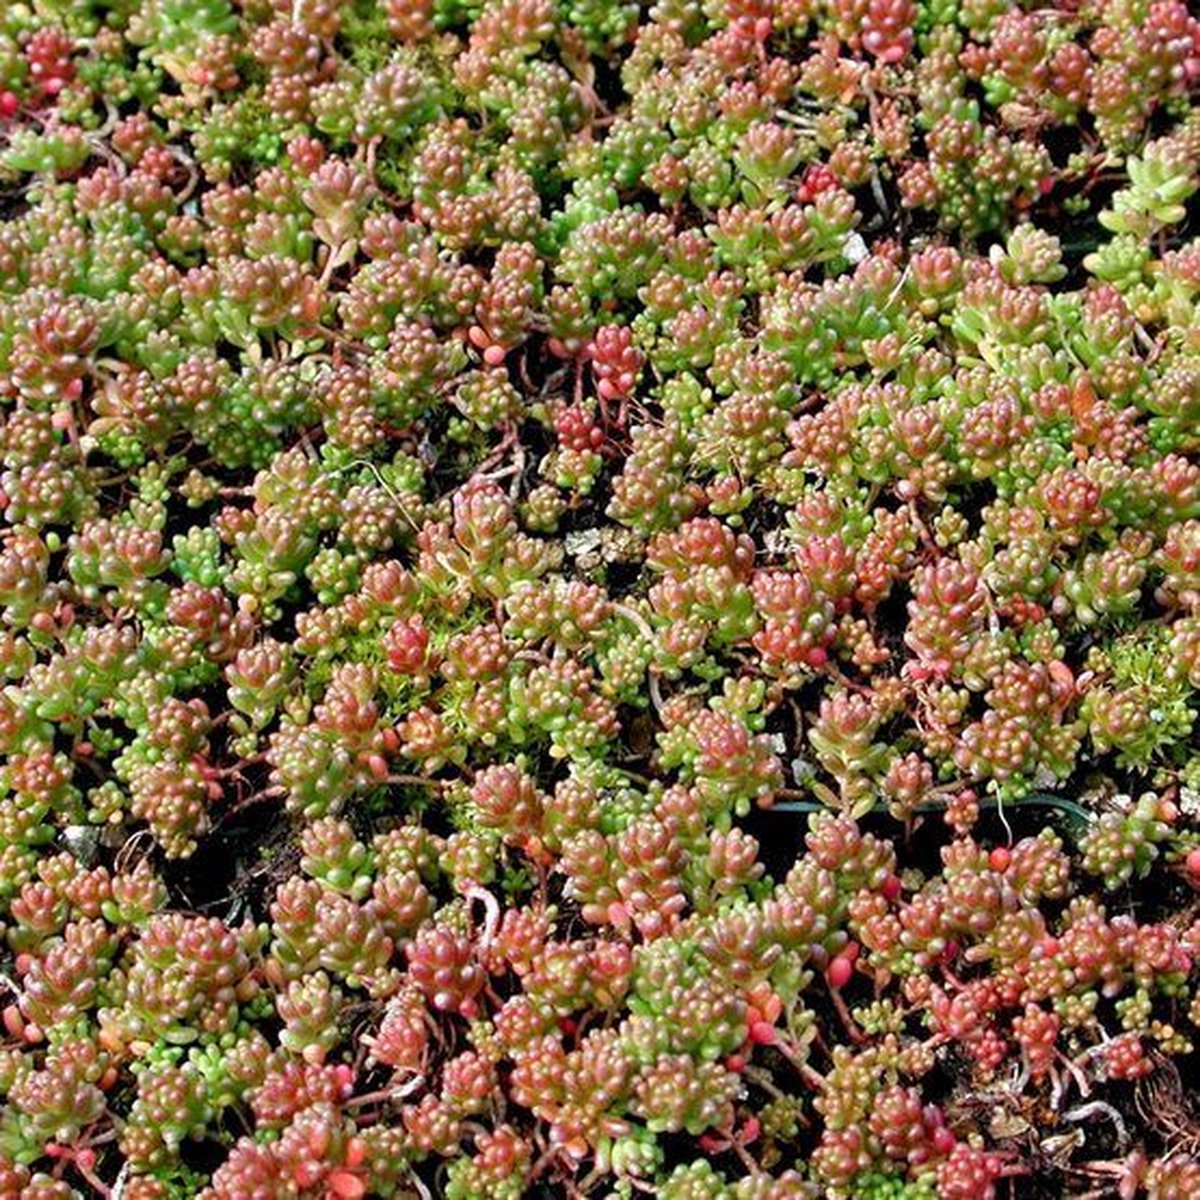 25 x Vetkruid of Muurpeper Rood|Groen - Bodembedekker Wintergroen - Sedum album 'Coral Carpet' in 9x9cm pot met hoogte 5-10cm